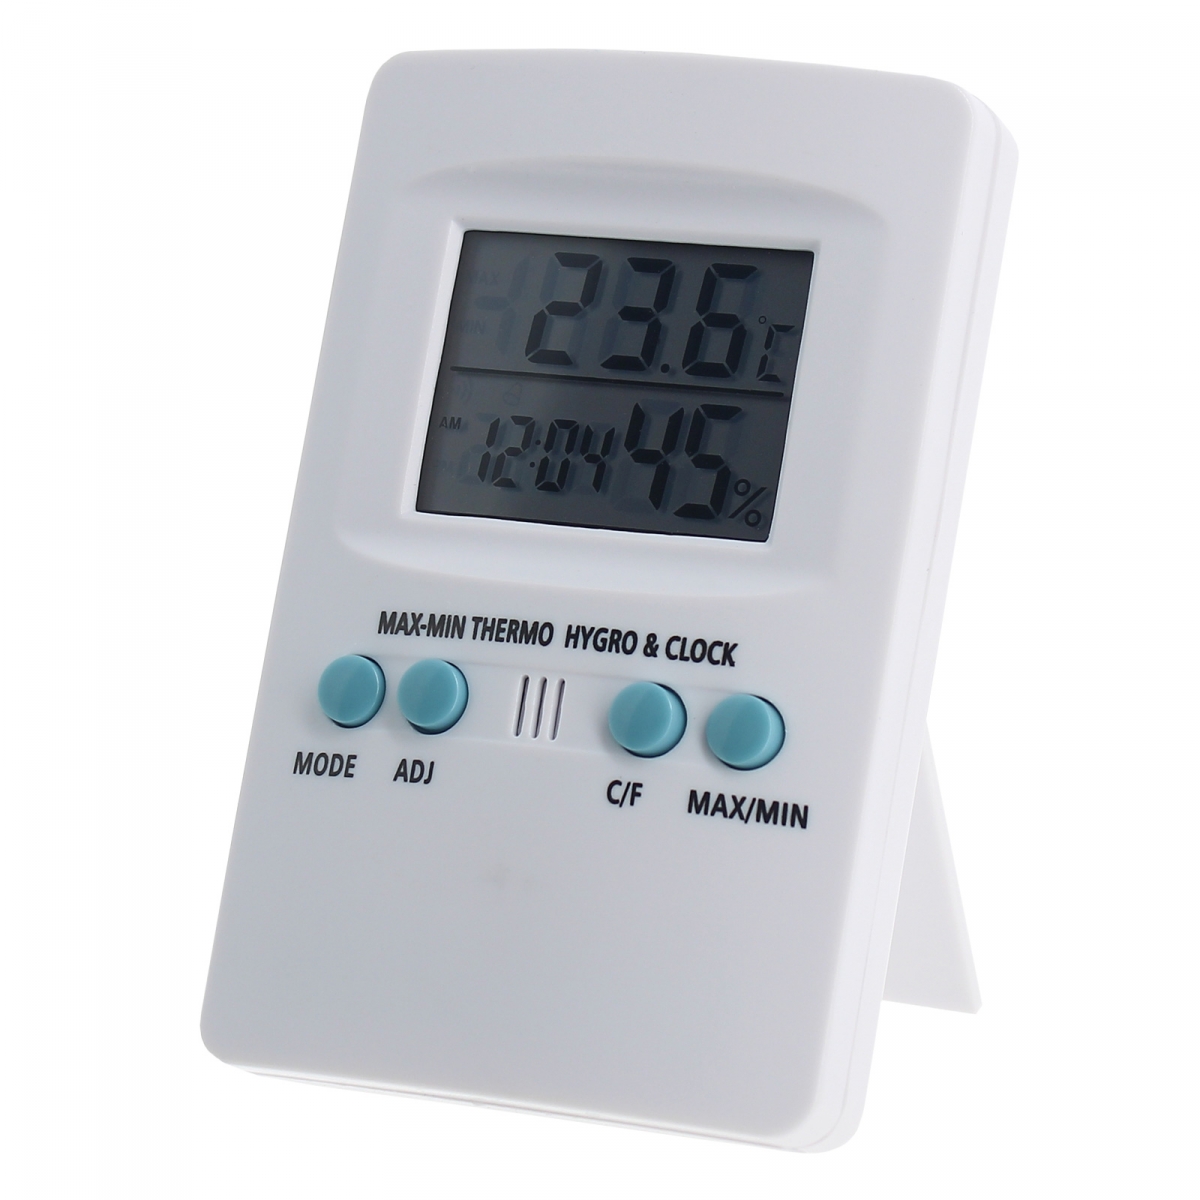 Thermomètre / Hygromètre électronique